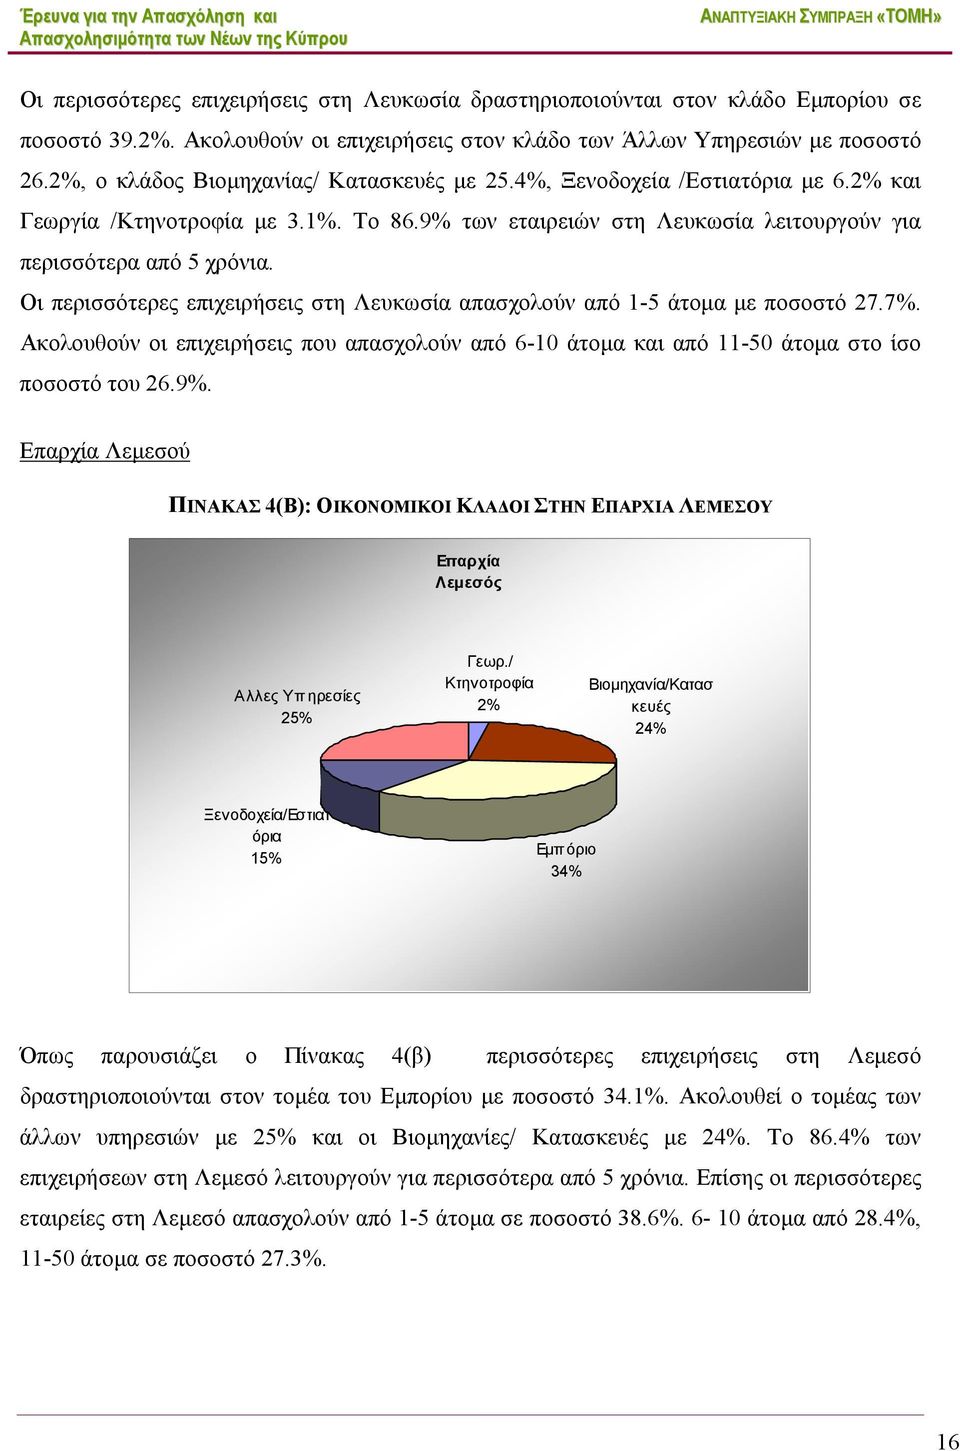 Οι περισσότερες επιχειρήσεις στη Λευκωσία απασχολούν από 1-5 άτομα με ποσοστό 27.7%. Ακολουθούν οι επιχειρήσεις που απασχολούν από 6-10 άτομα και από 11-50 άτομα στο ίσο ποσοστό του 26.9%.